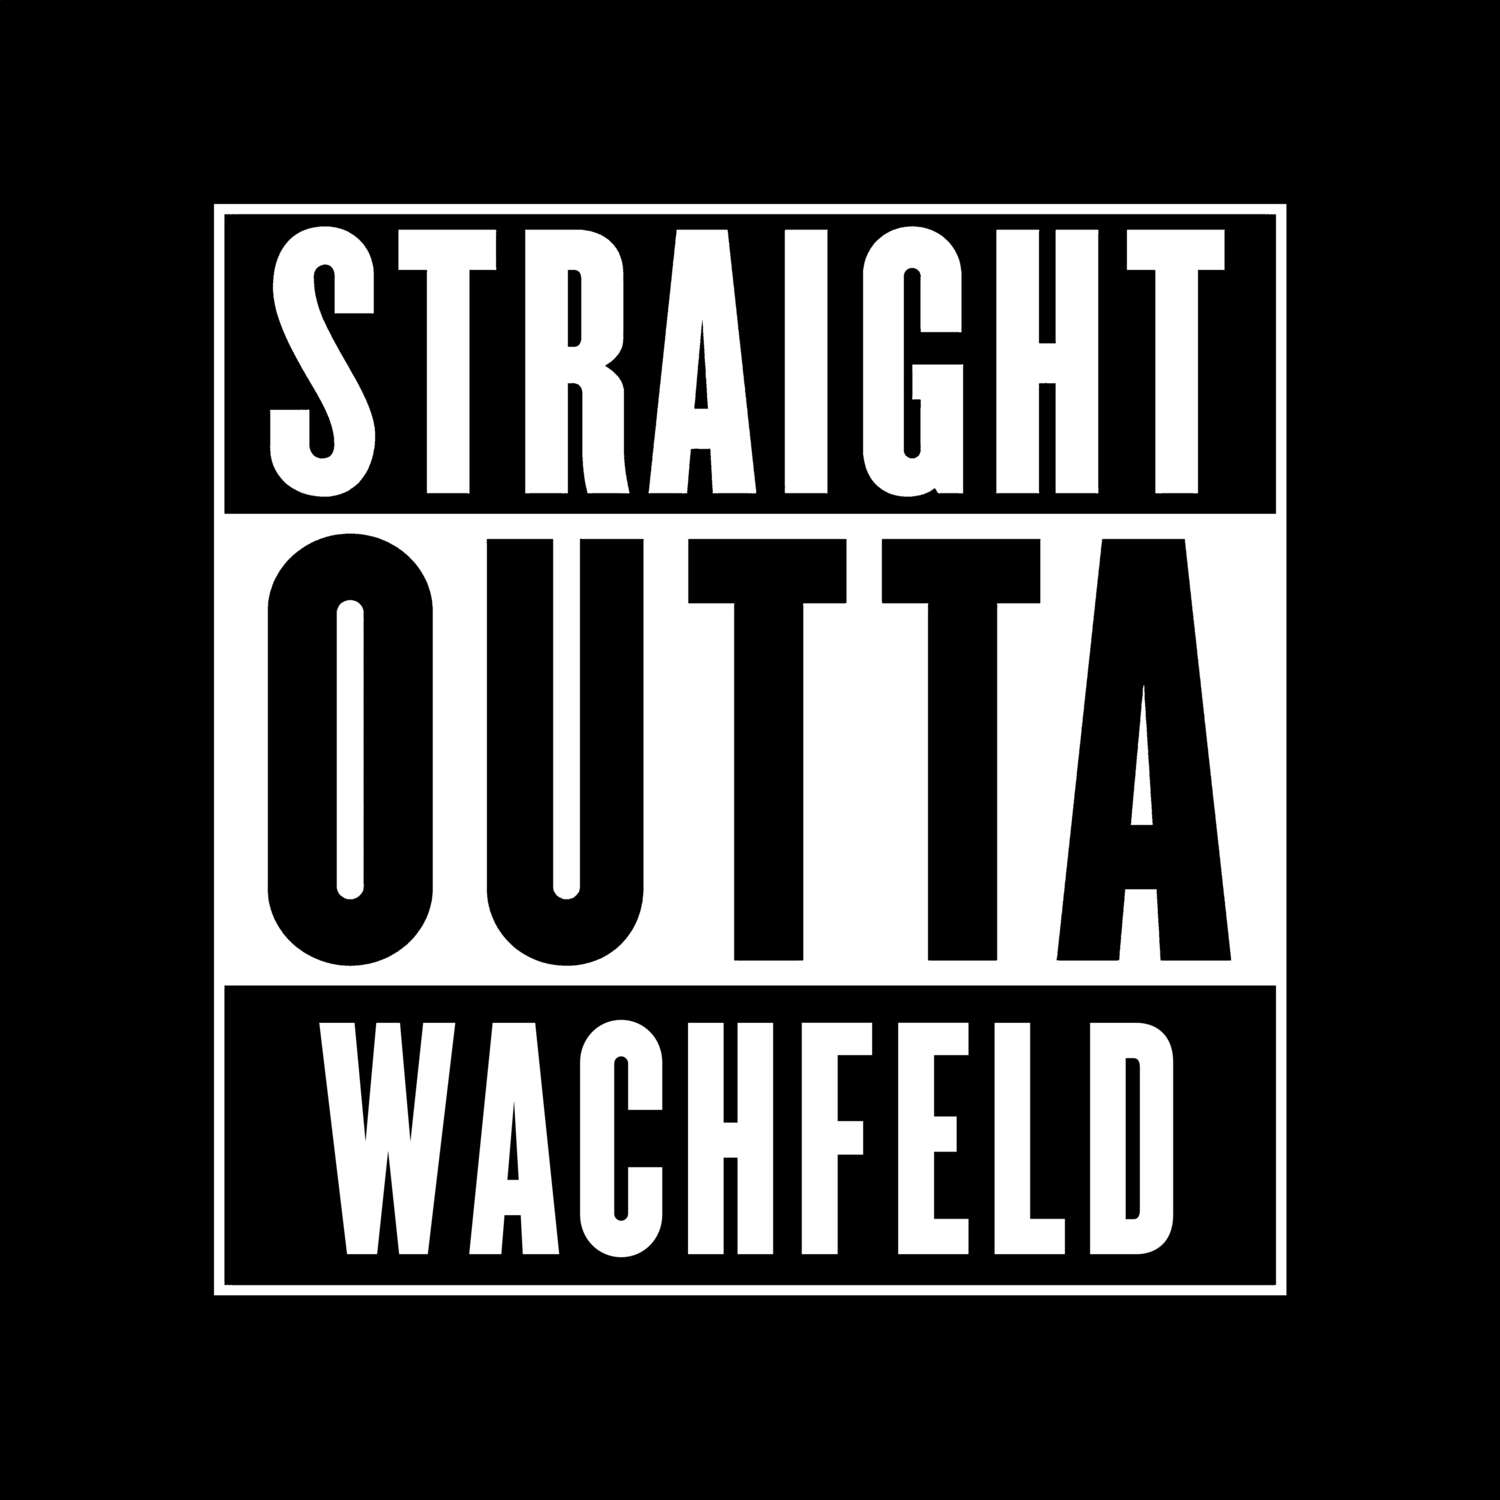 Wachfeld T-Shirt »Straight Outta«